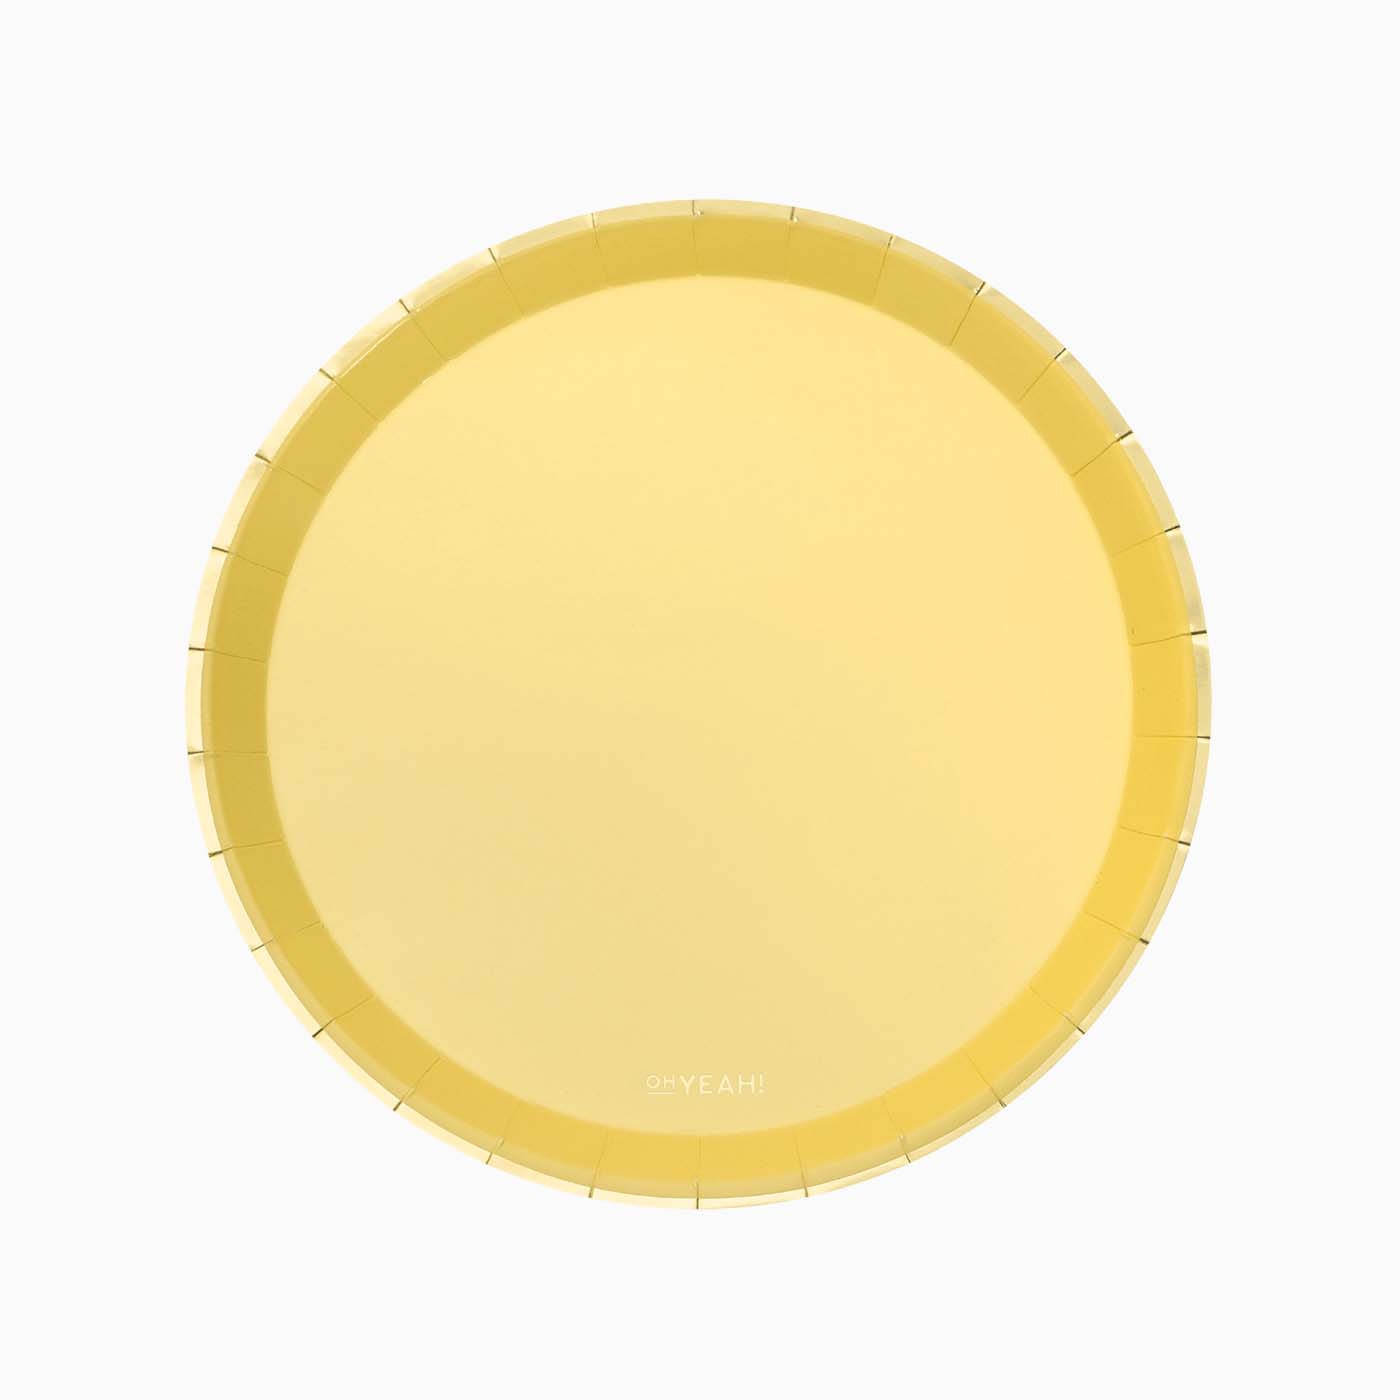 Cardboard redondo metalizado Ø 20,5 cm Amarelo pastel